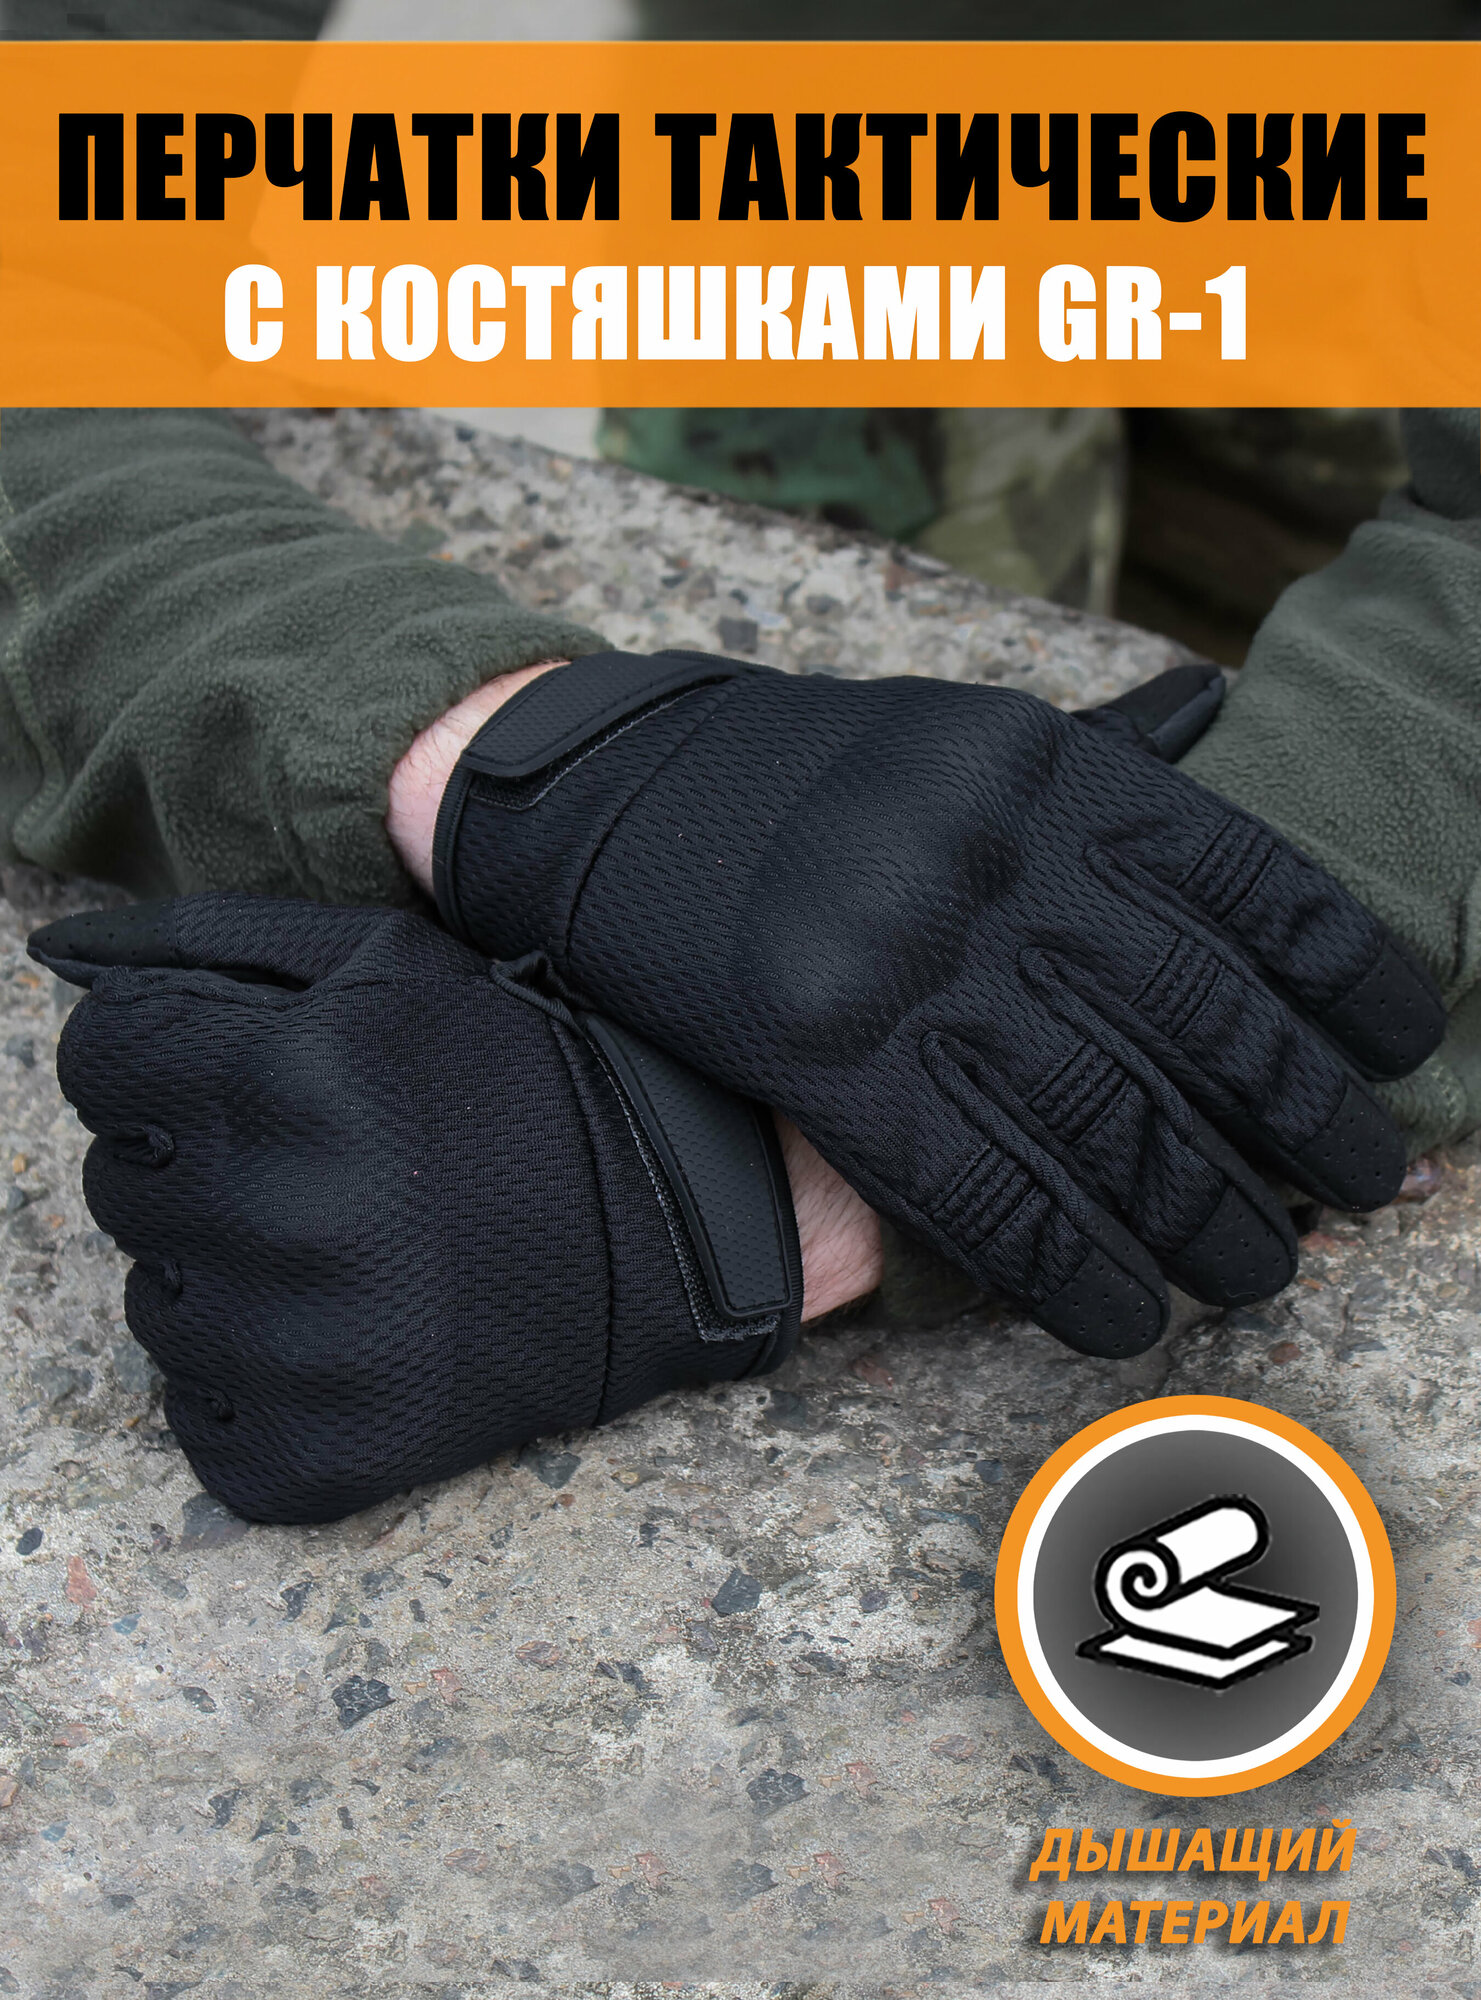 Перчатки тактические с защитной вставкой на костяшках GR-1, Цвет: Чёрный, Размер: XL